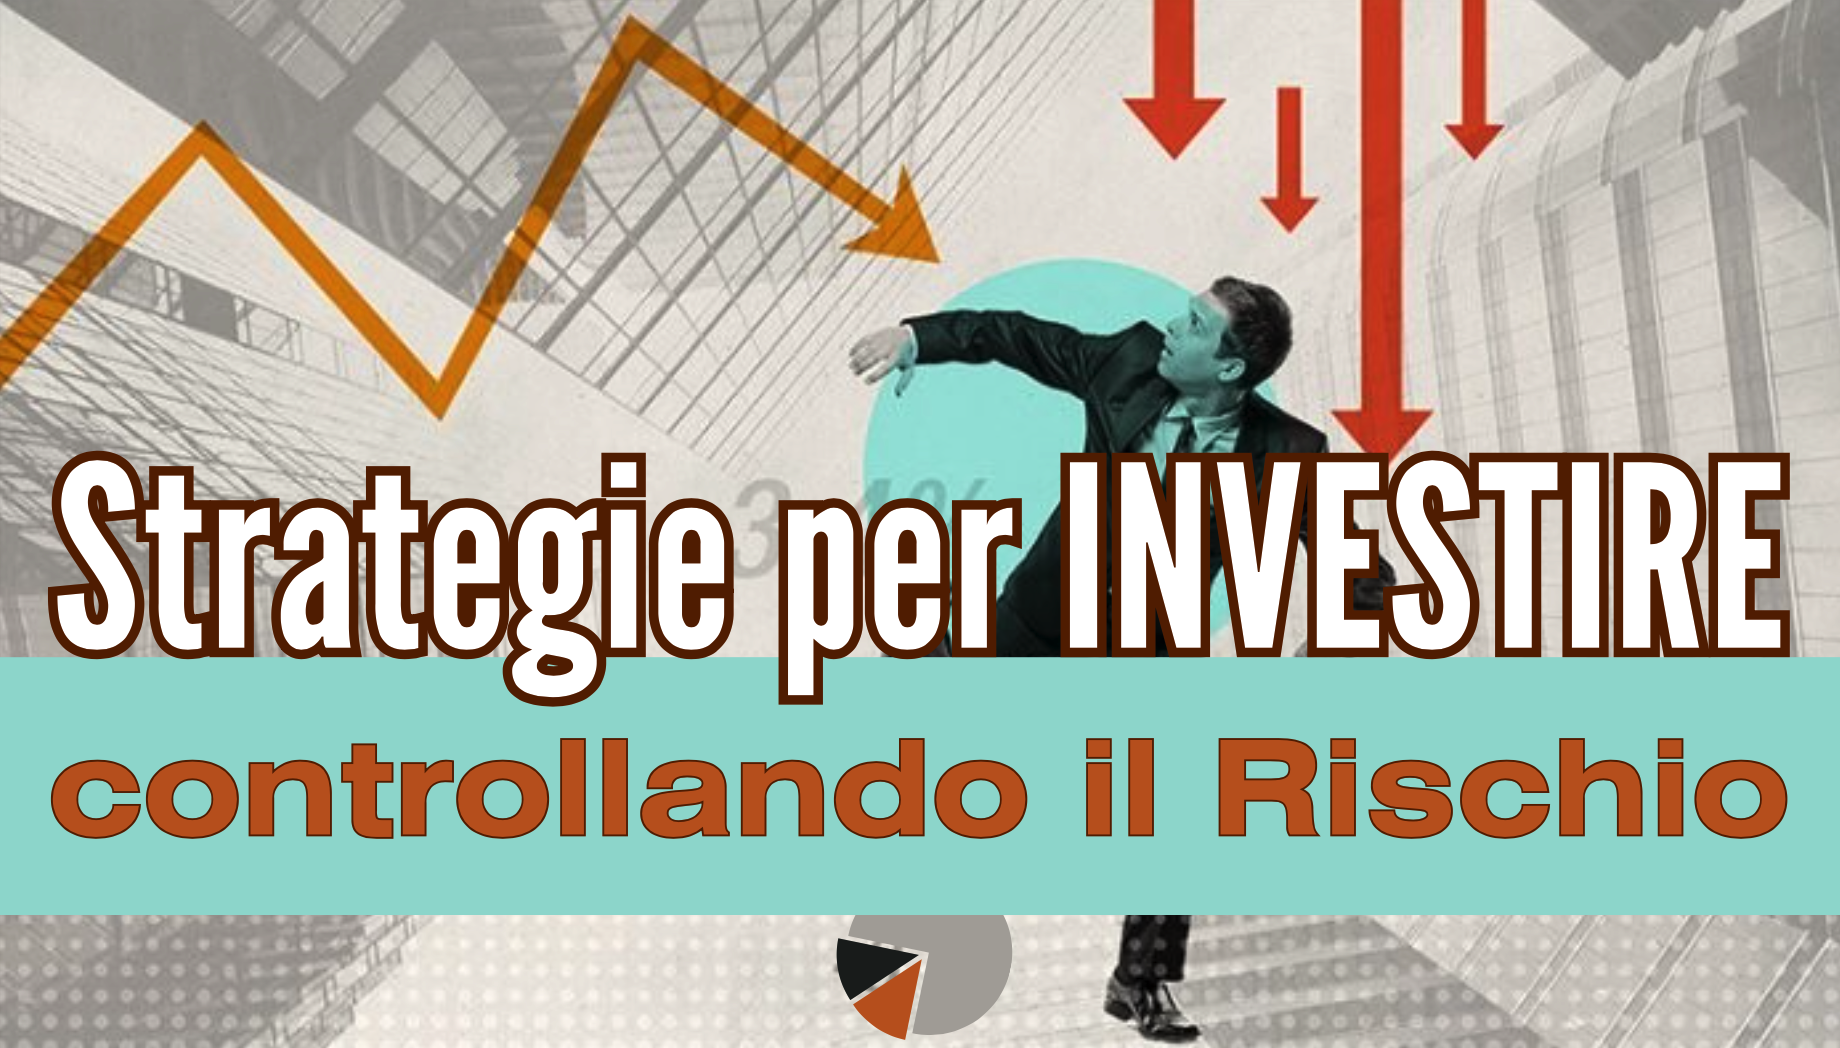 strategie di investimento: strategie per investire controllando il rischio